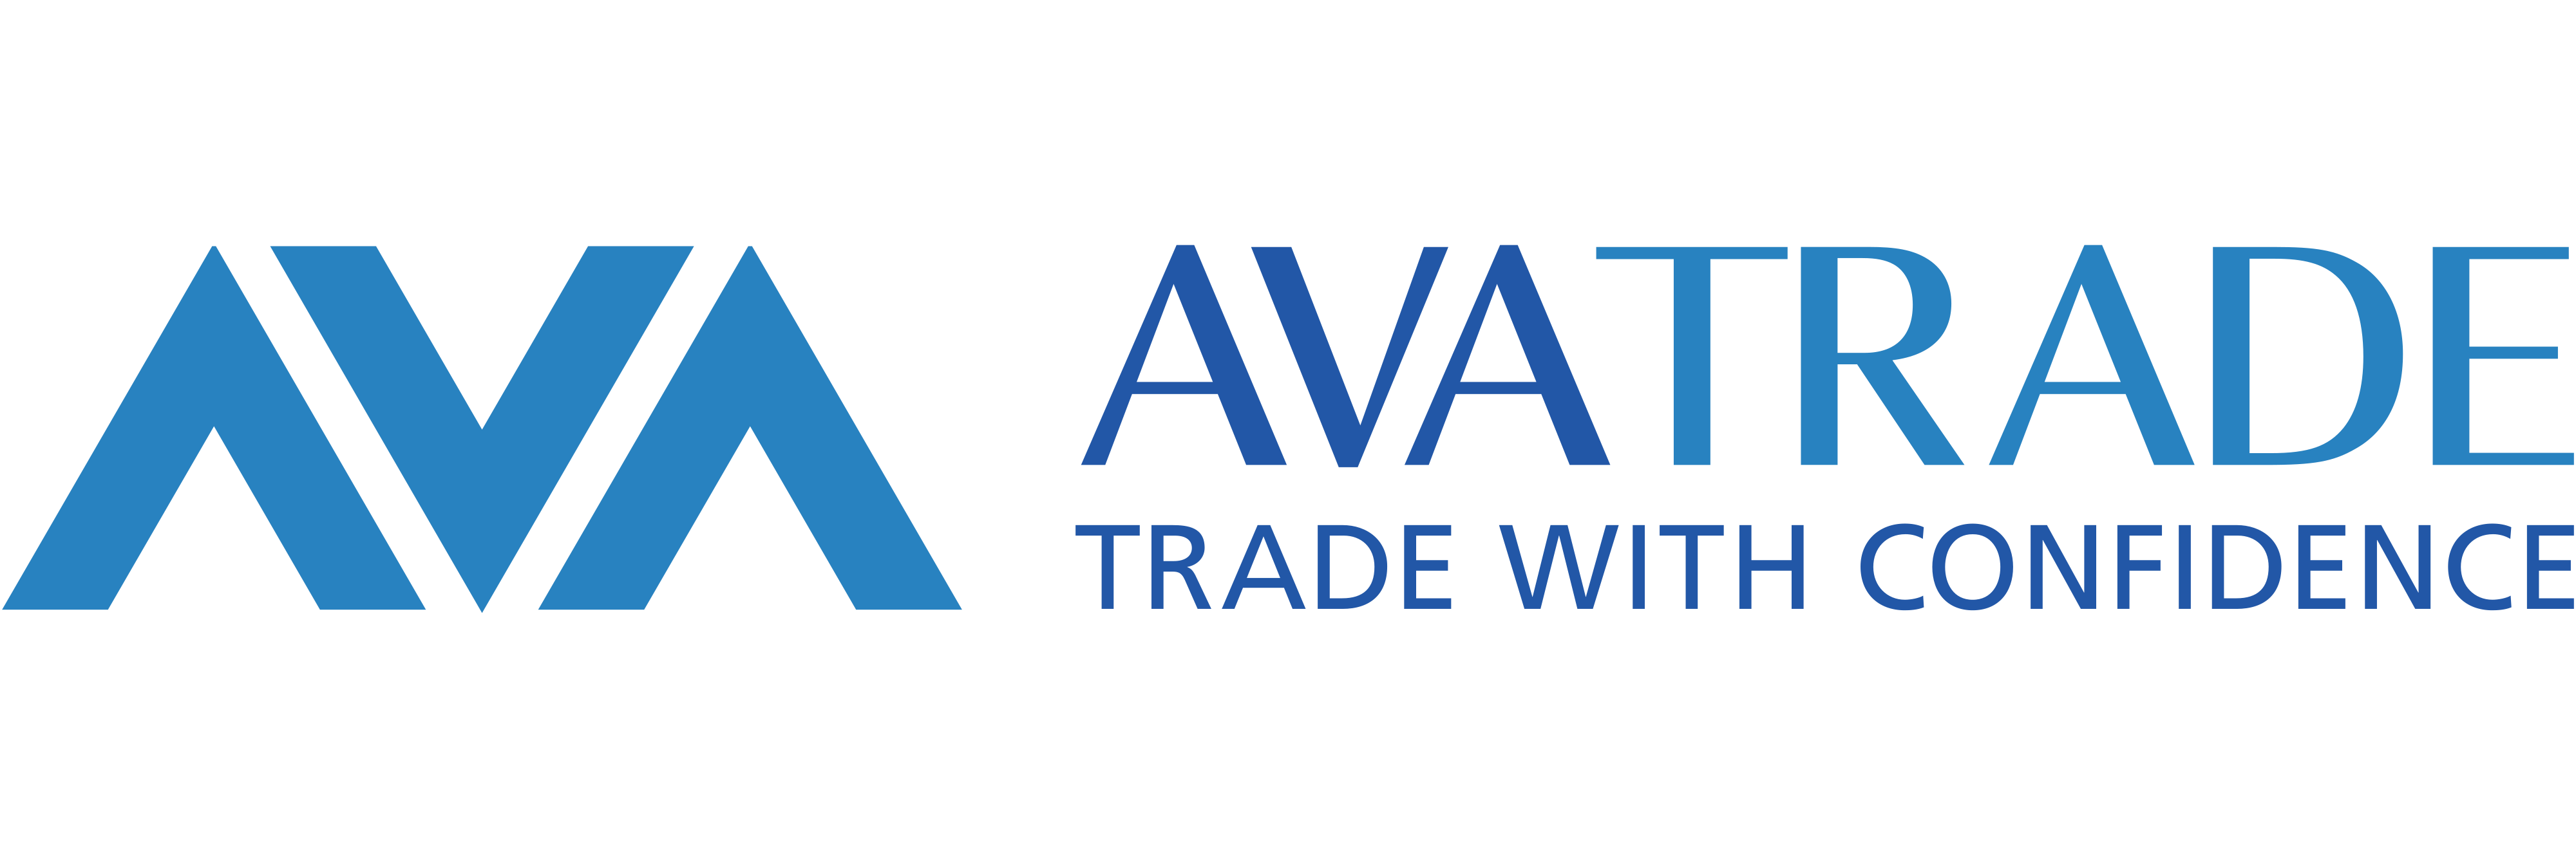 AvaTrade logo - download.